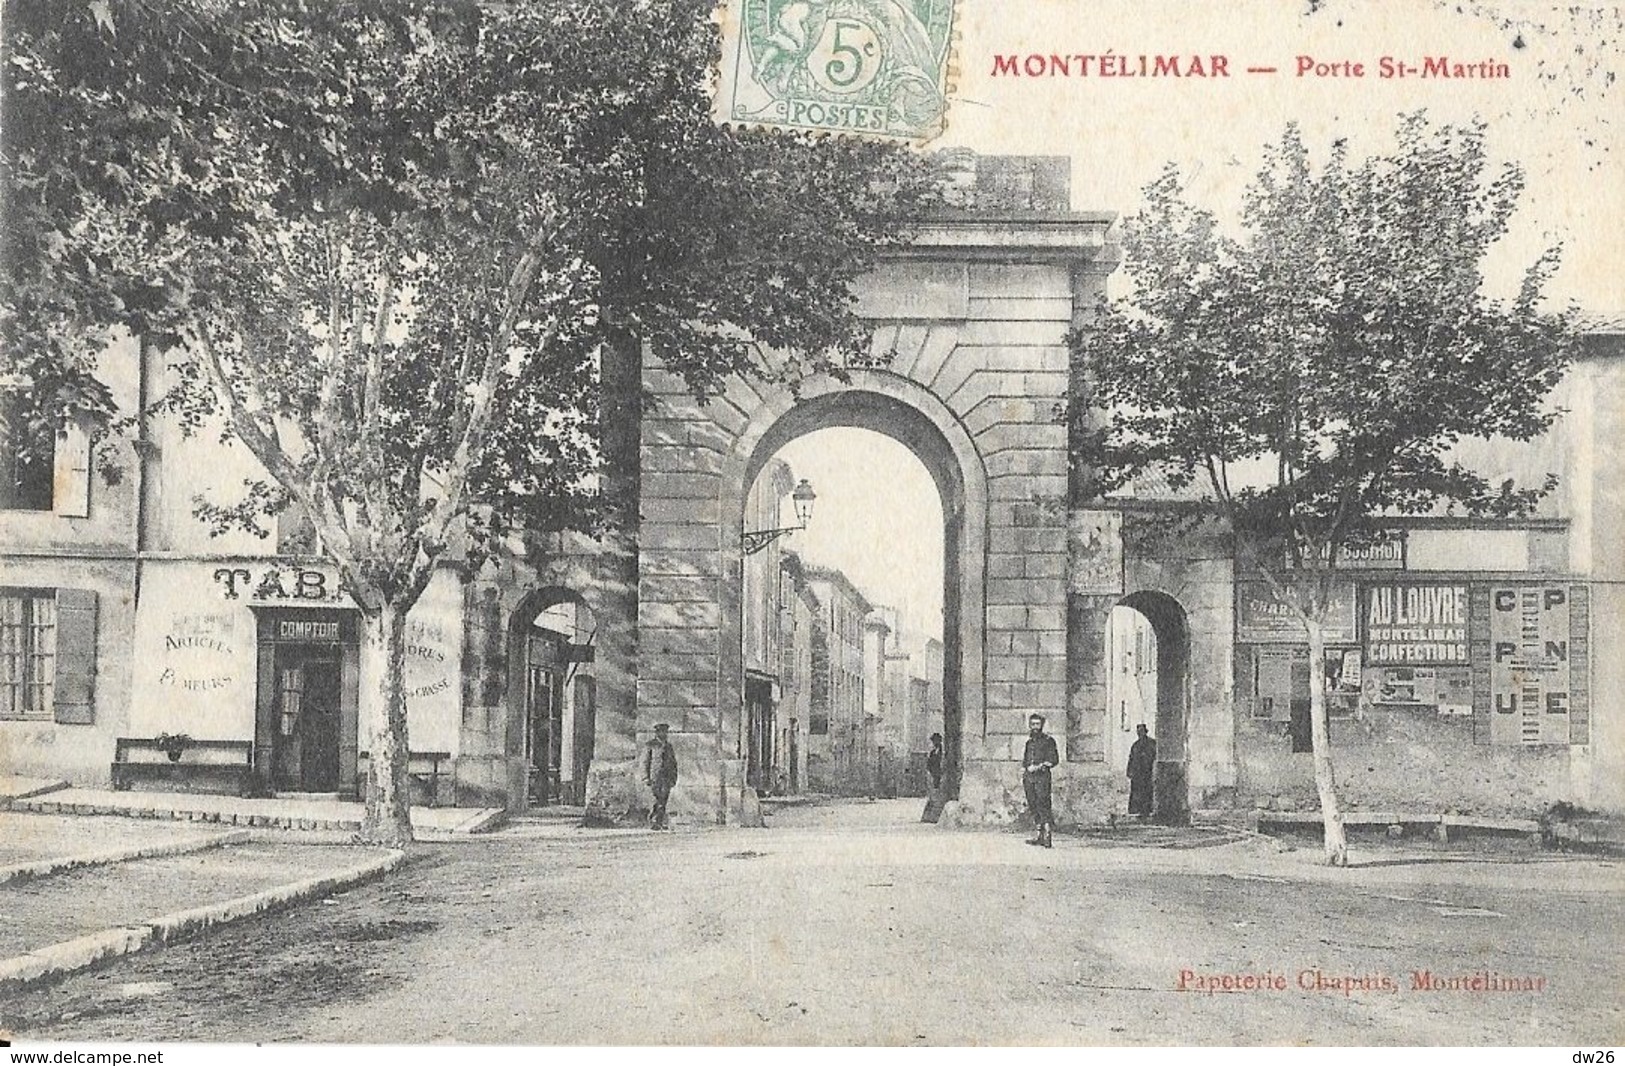 Montélimar (Drôme) La Porte St Saint-Martin, Tabac - Papeterie Chapuis - Montelimar